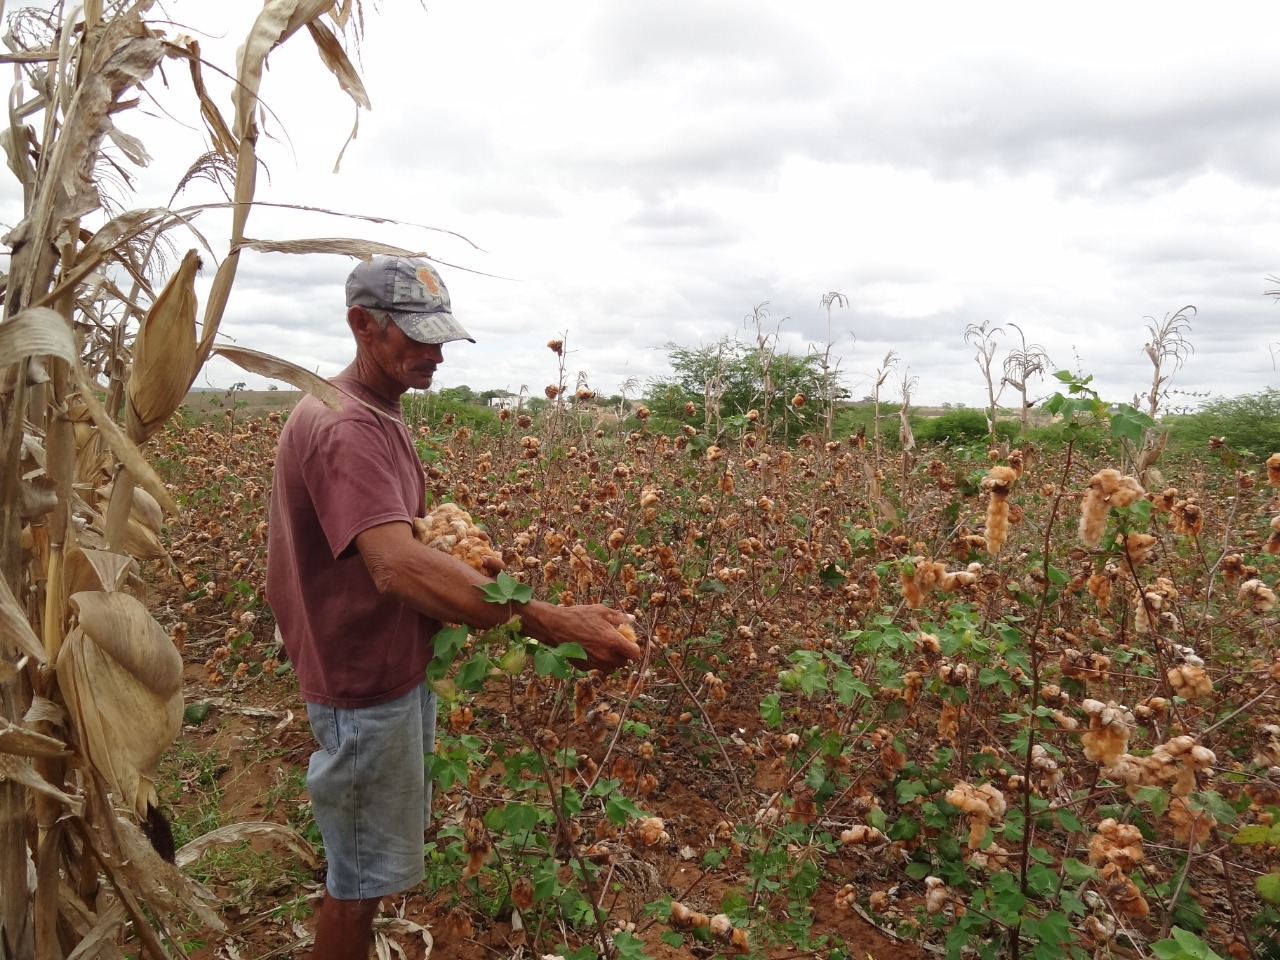 Especialistas refletem sobre agroecologia, agricultura familiar e algodão  no cenário atual — Português (Brasil)